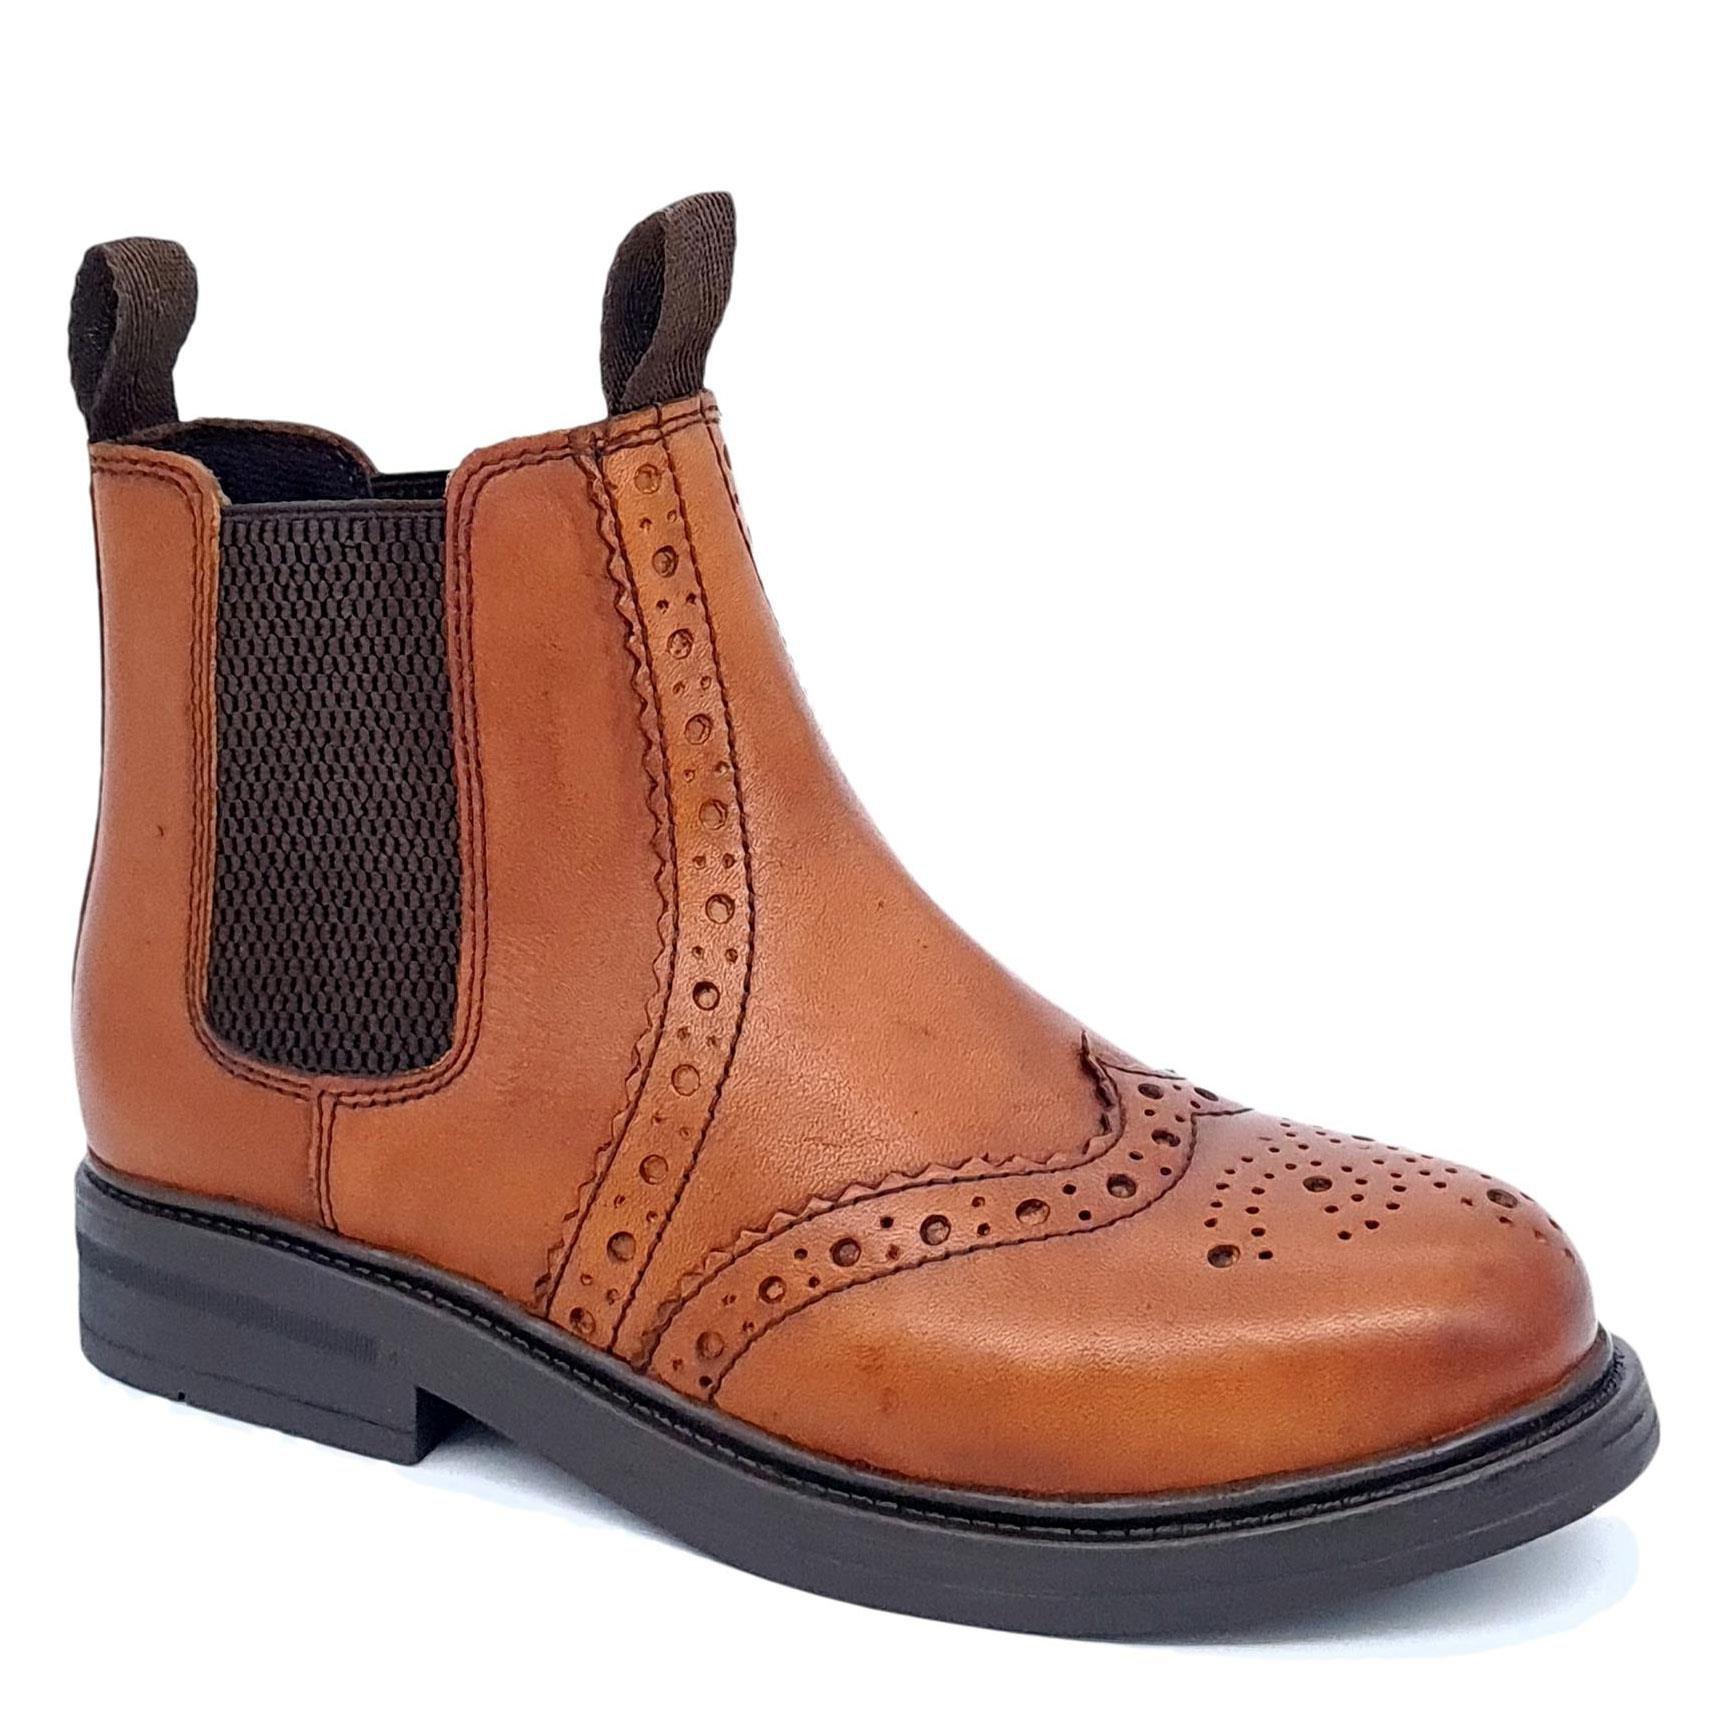 Кожаные ботинки челси с акцентом на броги Wrexham Frank James, коричневый кожаные туфли дерби броги parade frank james коричневый